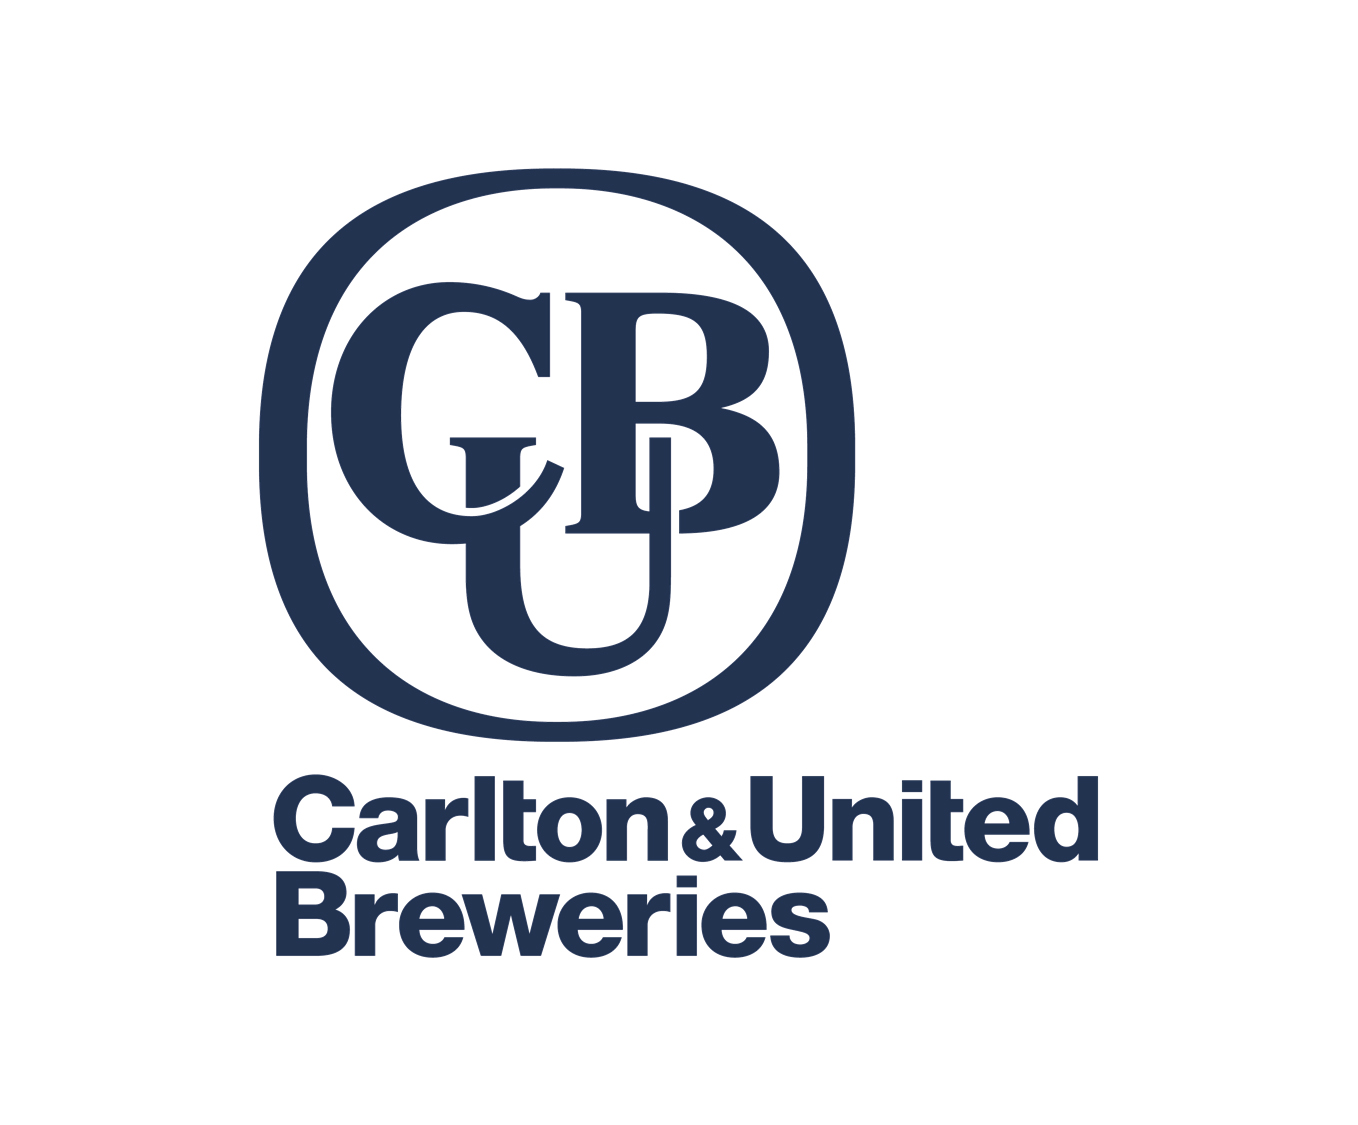 Carlton & United Yatala Brewery